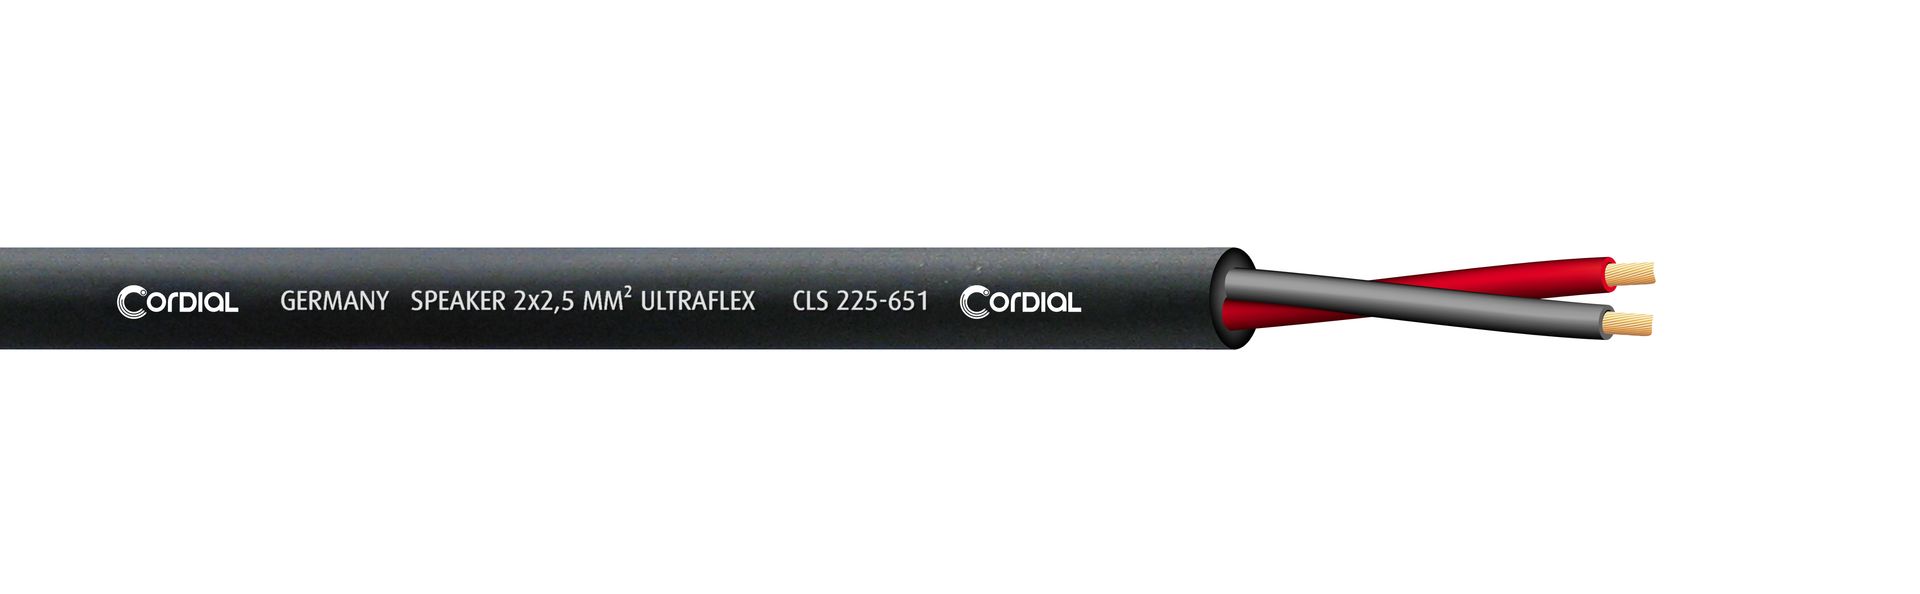 Cordial CLS 225-651 BK Lautsprecherkabel black 2x2,50 qmm, Meterware Ultraflex